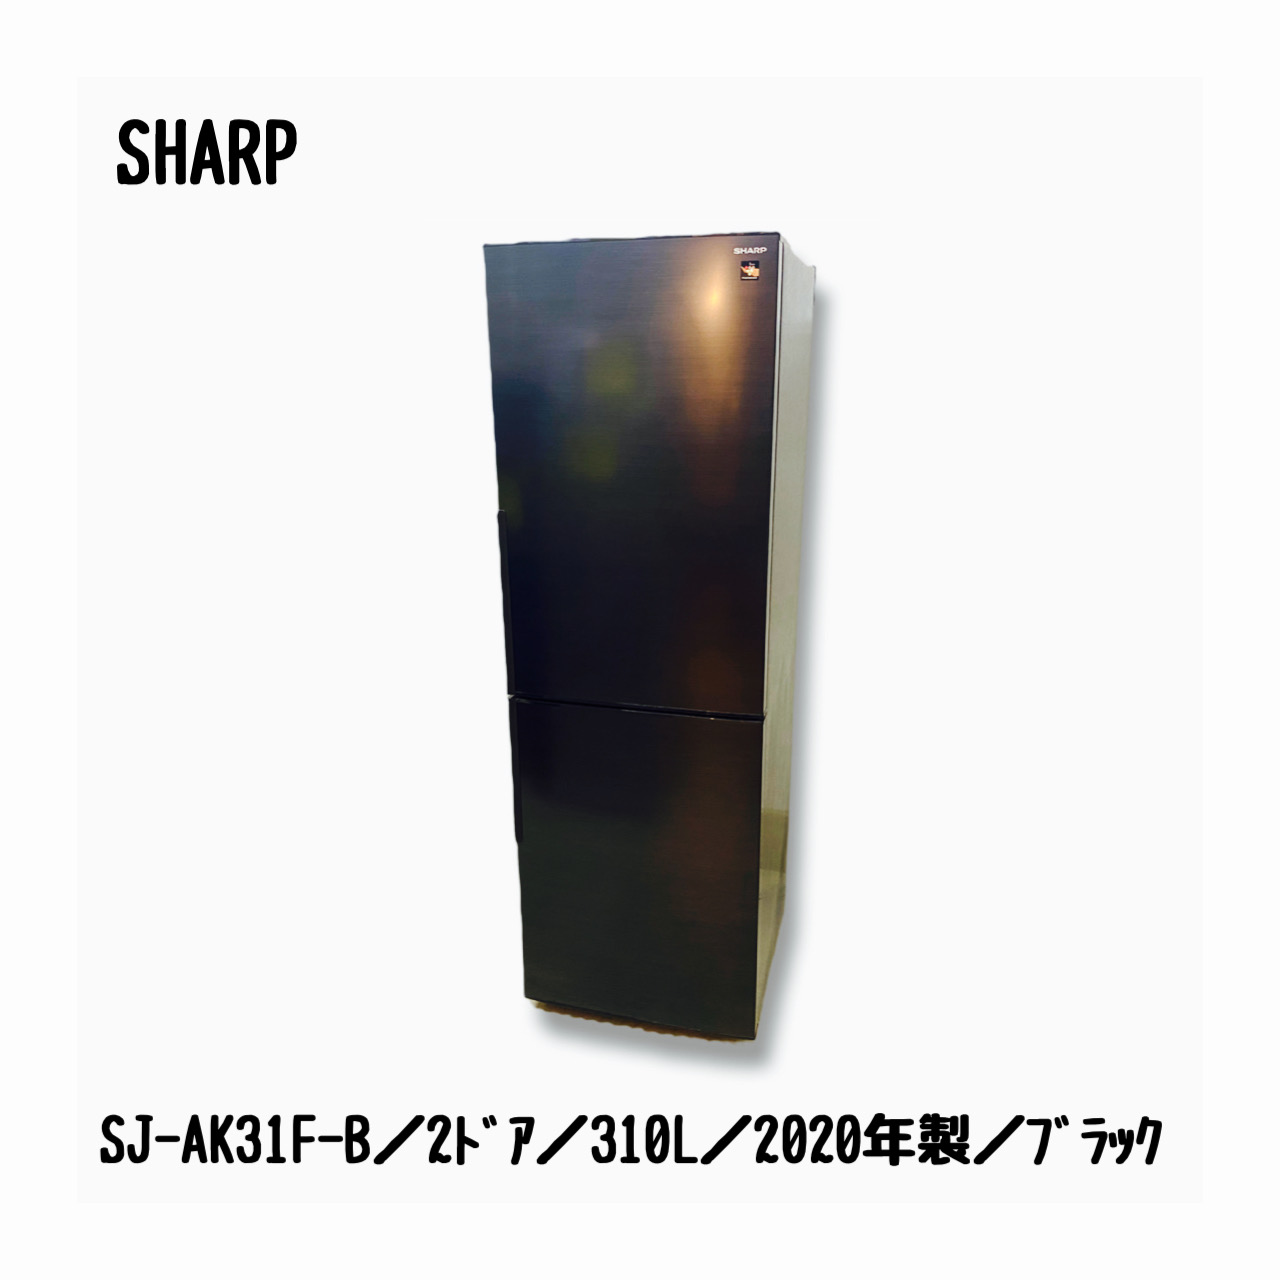 K♢007 シャープ 冷凍冷蔵庫 SJ-AK31F-Bドアに凹みがあります - www